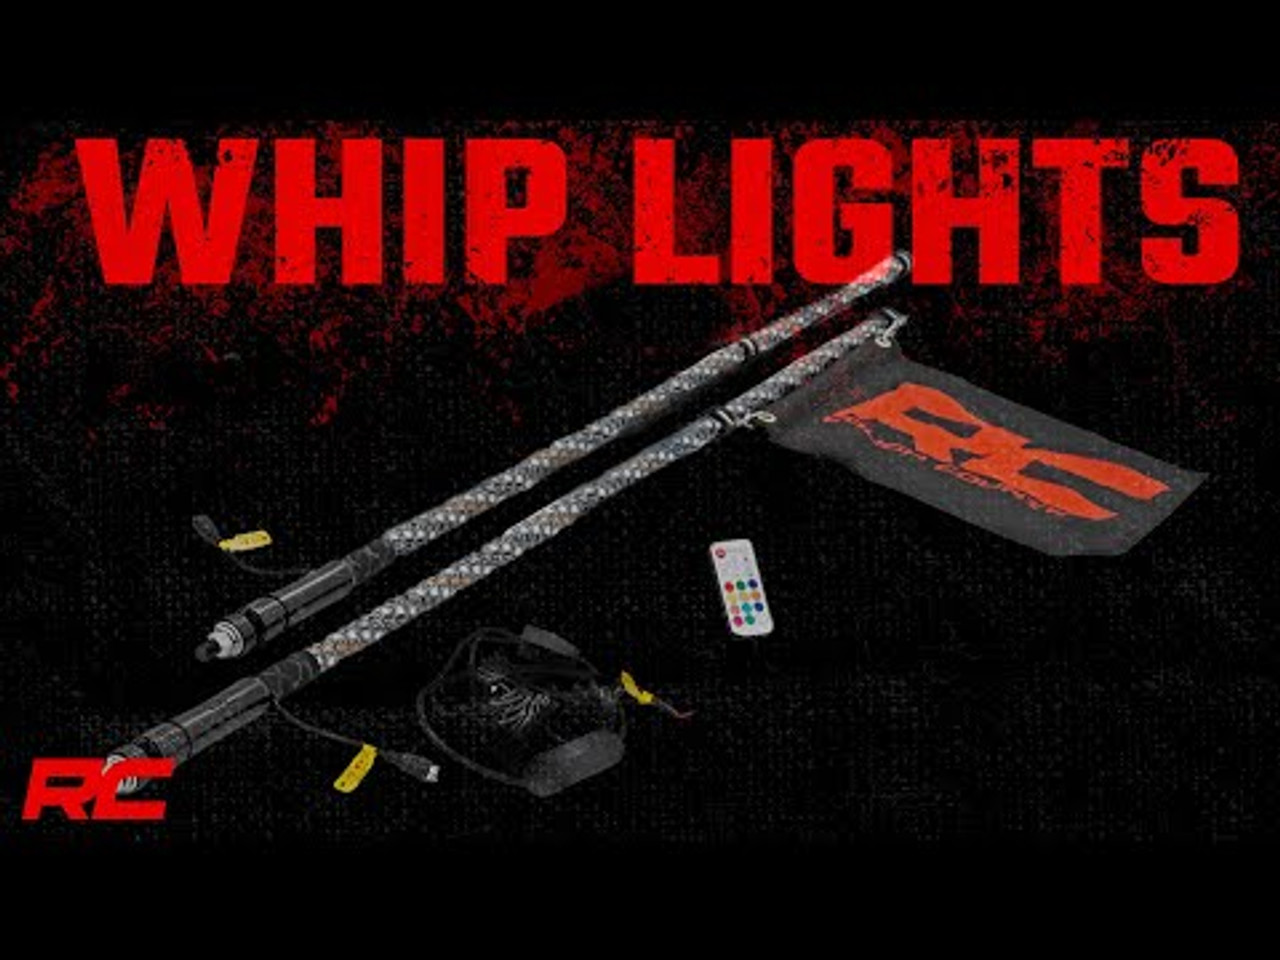 Polaris LED Whip Light Bed Mount Kit w/ LED Whip Lights 17-20 General/14-20 Ranger Rough Country